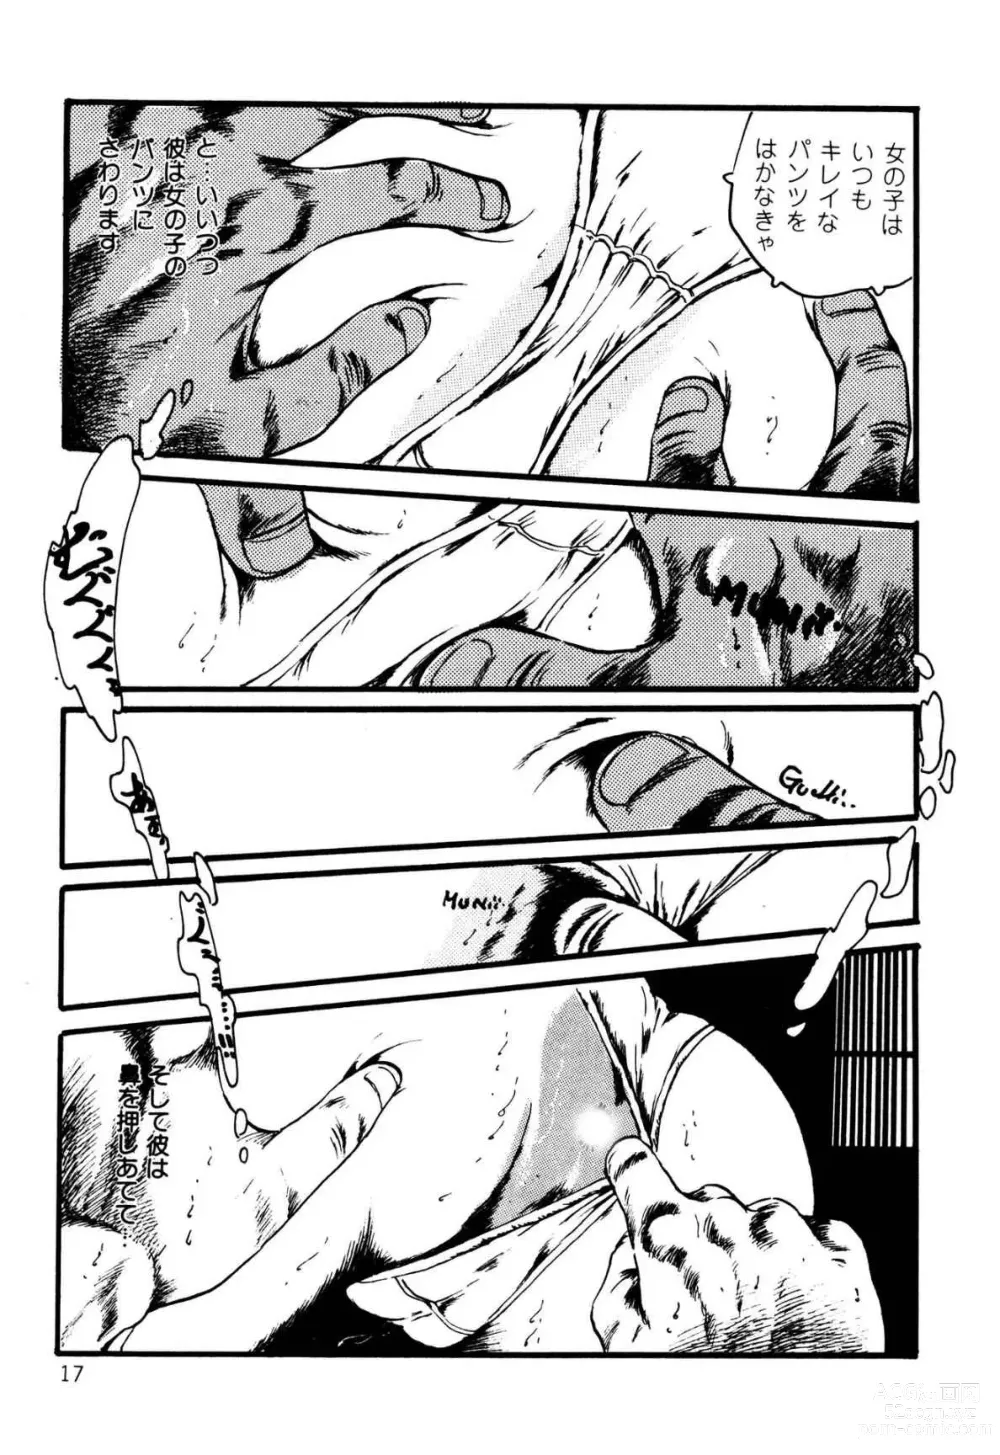 Page 17 of manga Koisuru Yousei